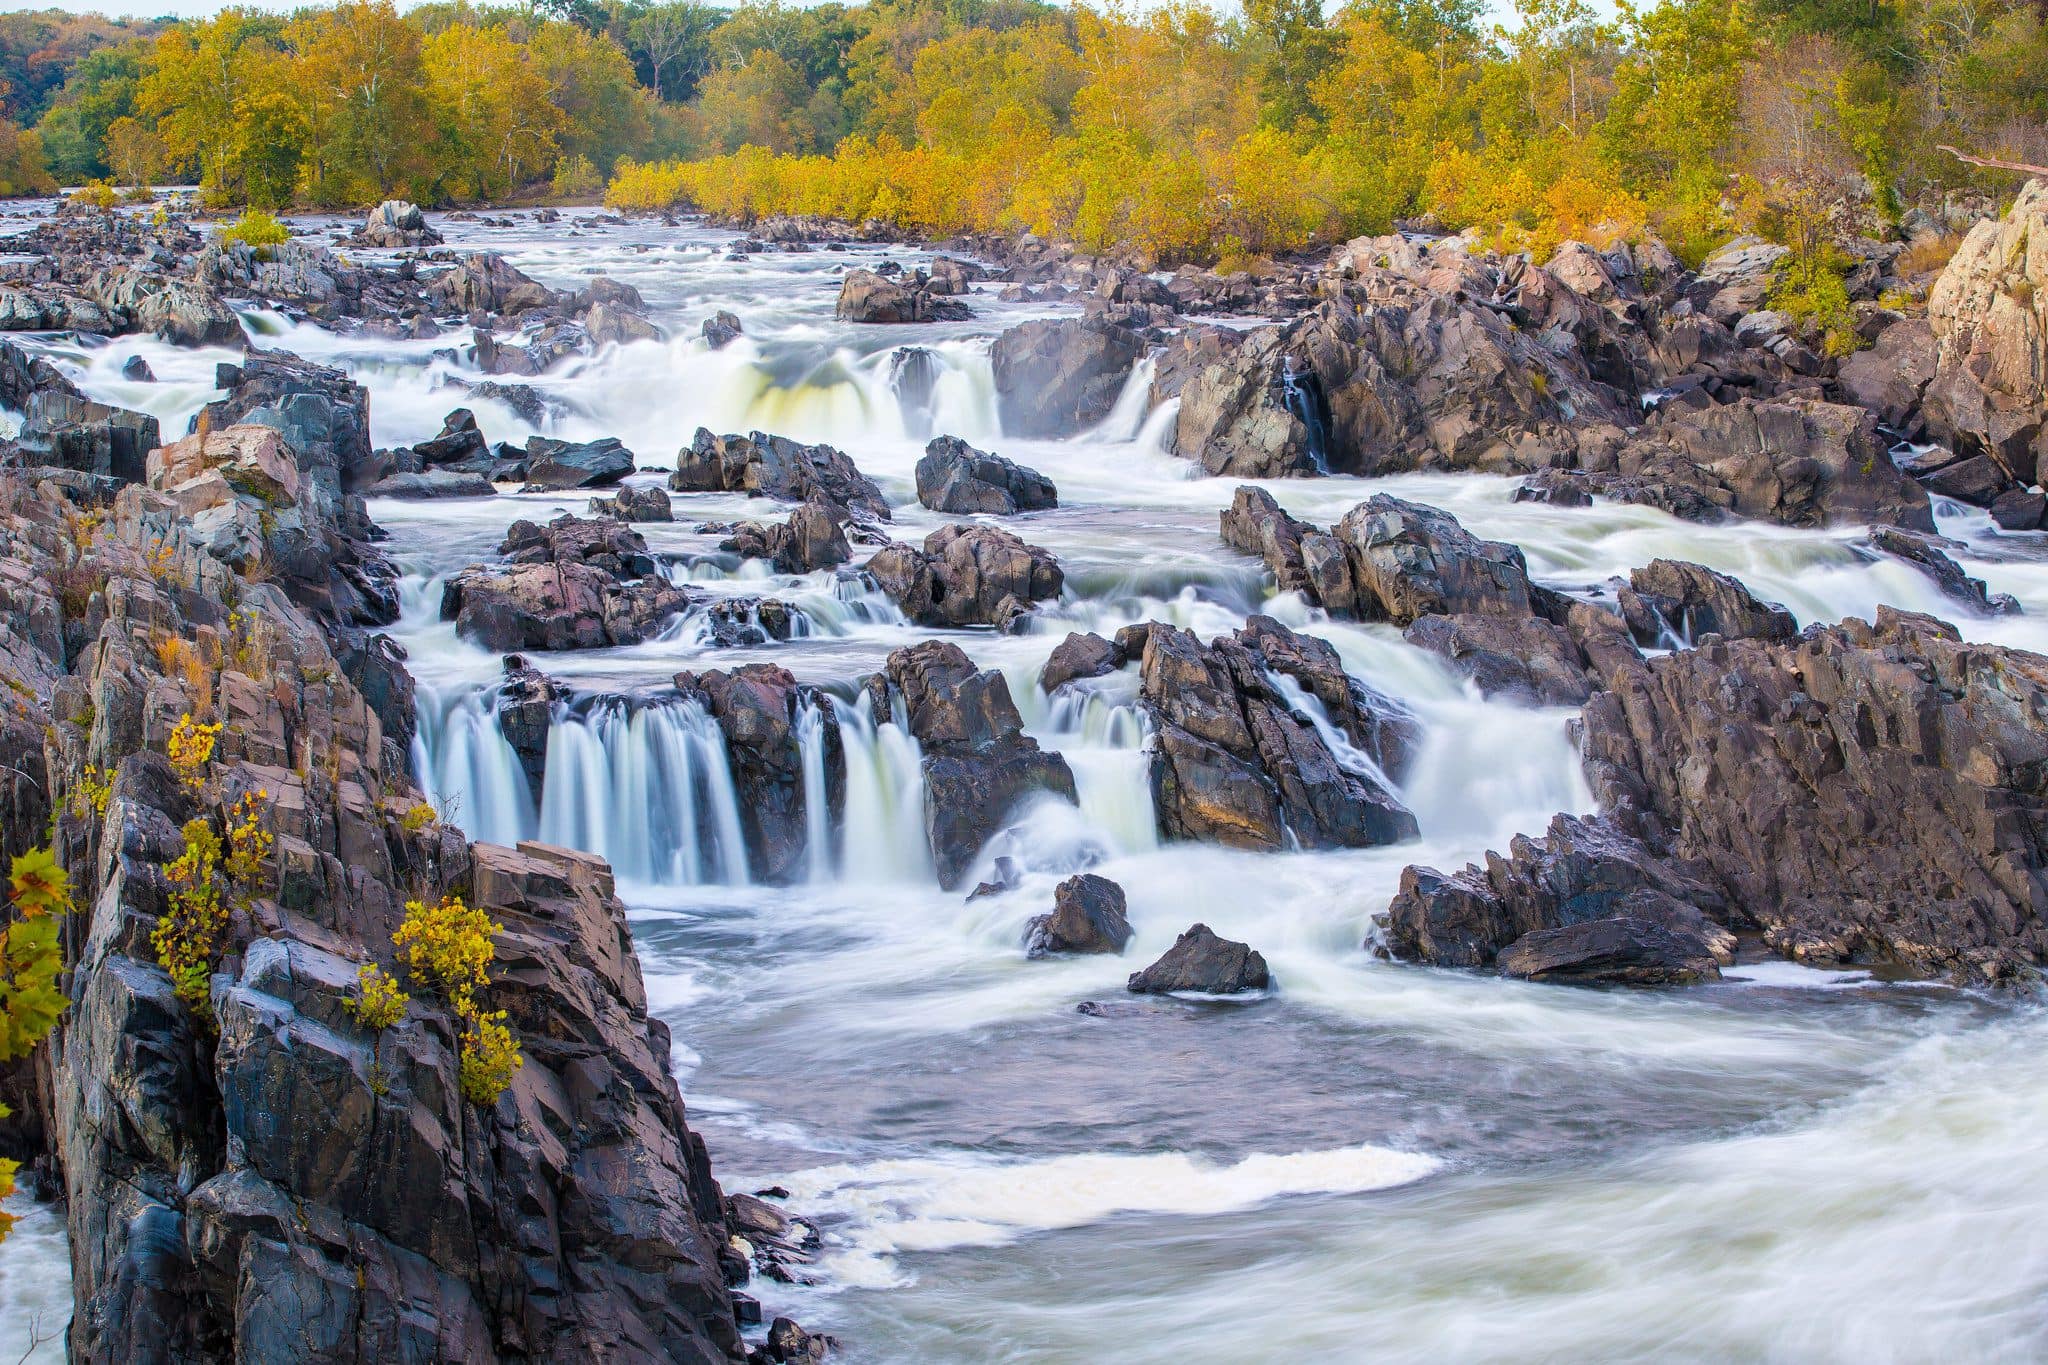 Image of rushing water through rocks of Great Falls